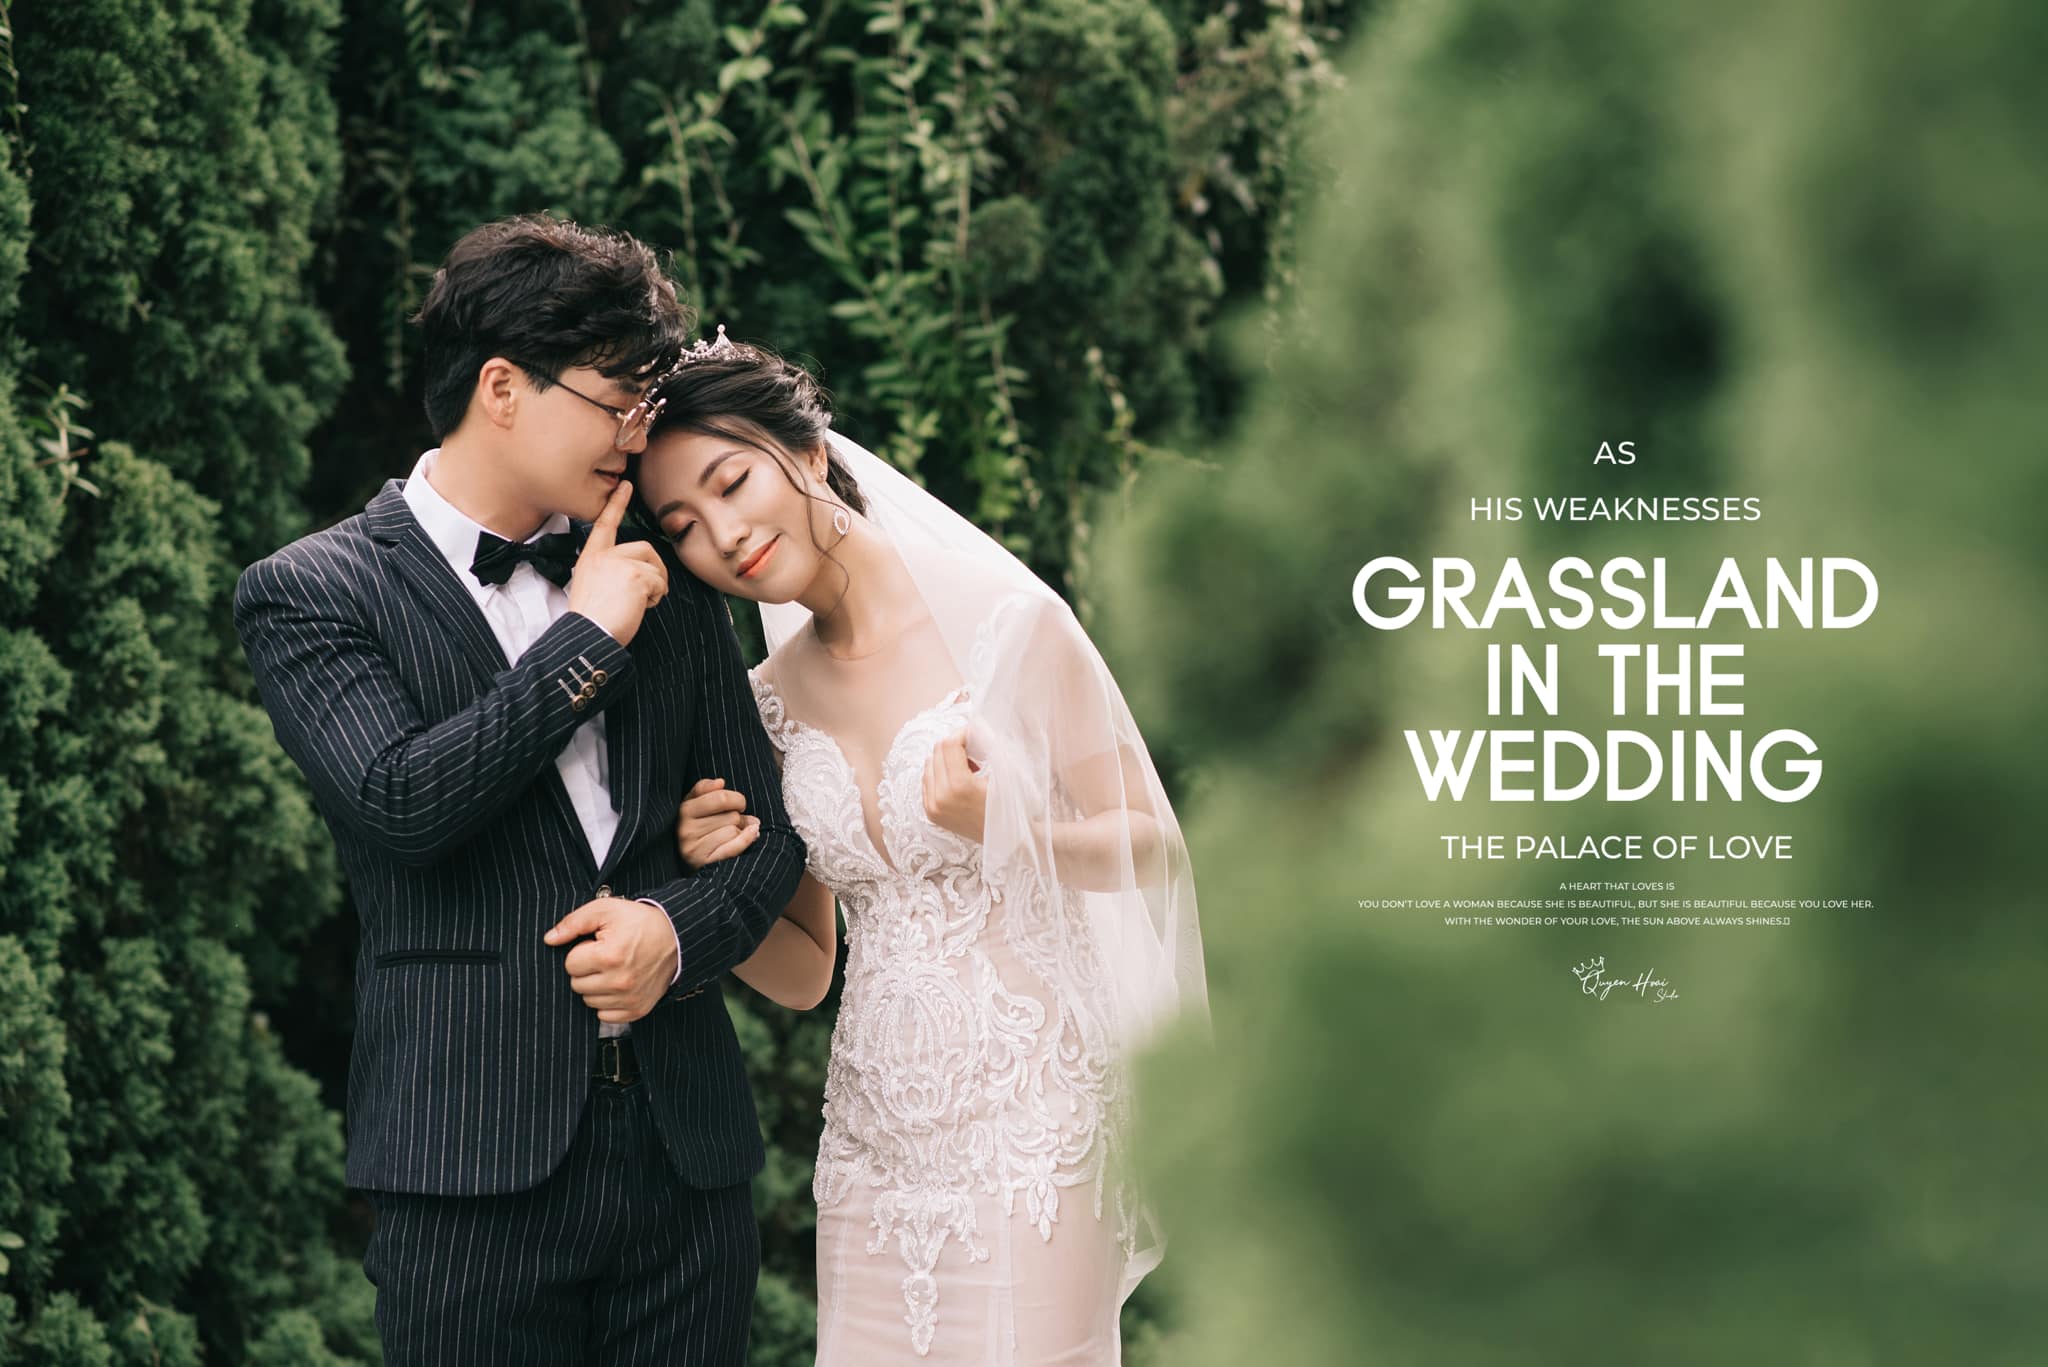 Studio chụp ảnh cưới đẹp Hải Dương không chỉ là nơi lưu giữ những khoảnh khắc đẹp trong ngày cưới của bạn, mà còn là nơi để các cặp đôi có thể tận hưởng những giây phút tuyệt vời trong không gian sang trọng, chuyên nghiệp và thân thiện với tất cả mọi người.